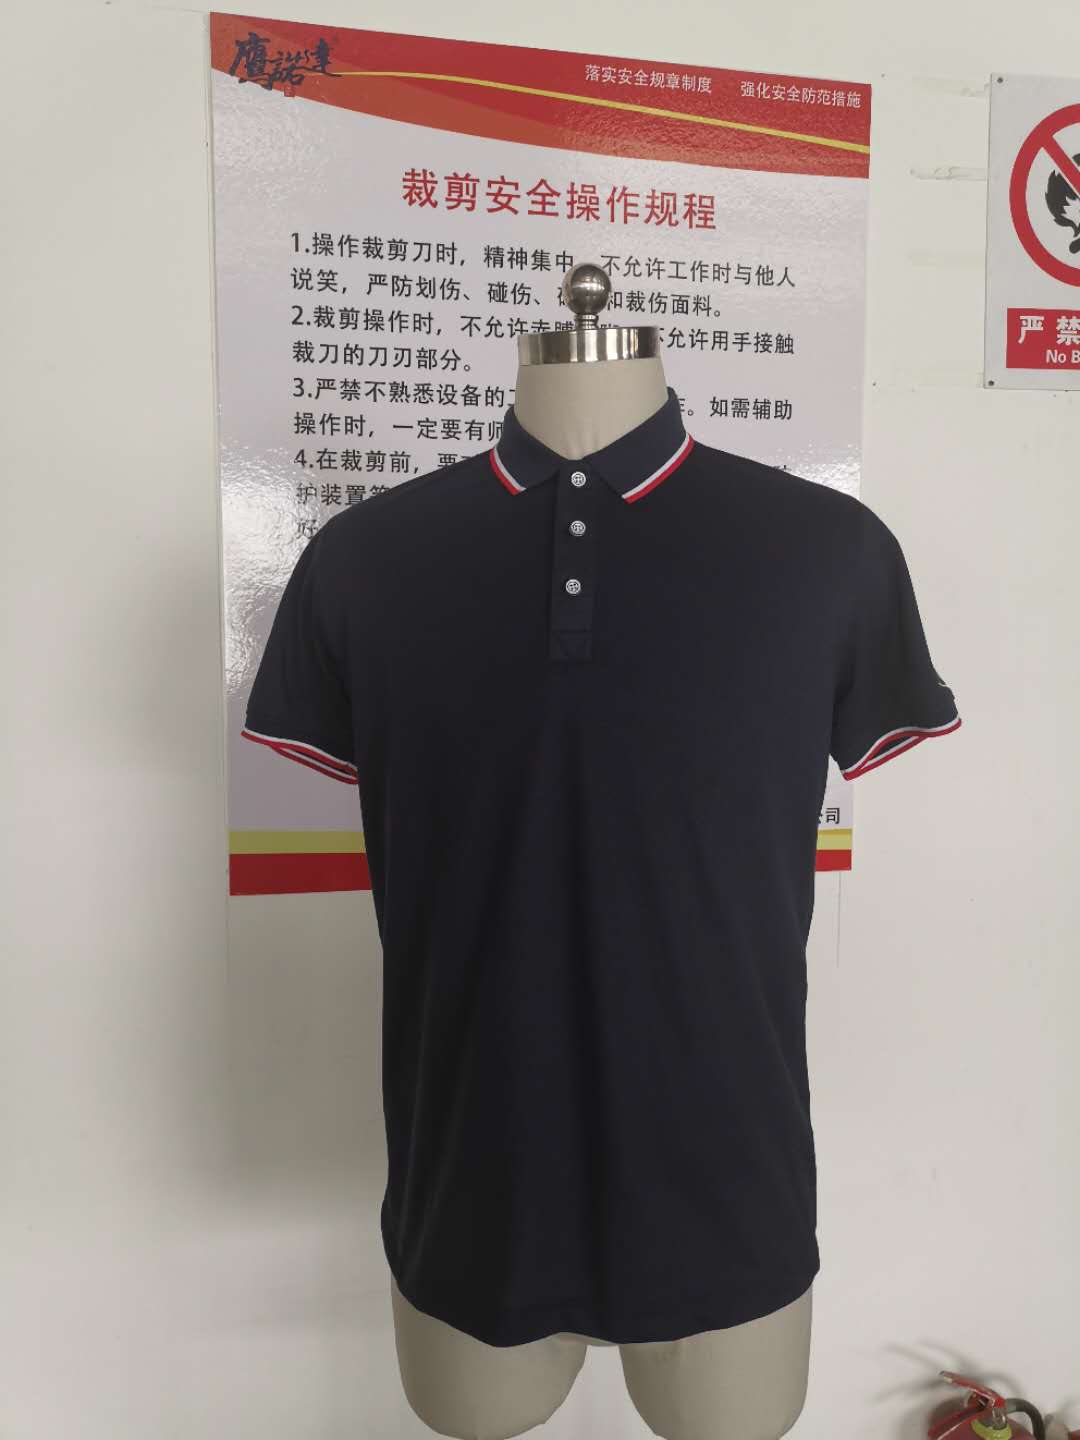 涿州国迈新源农业技术工作服t恤衫款式